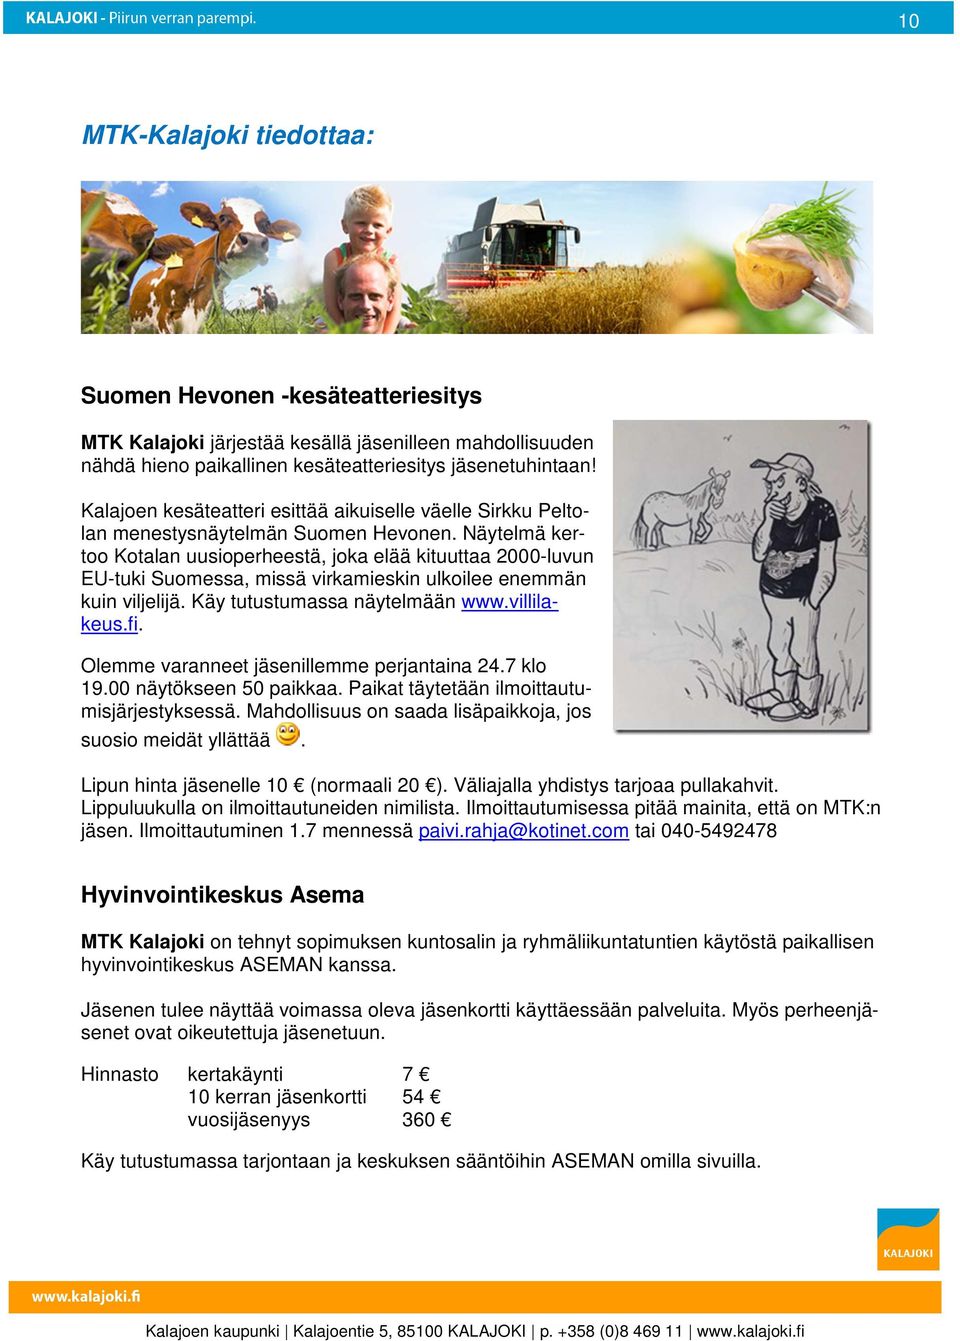 Näytelmä kertoo Kotalan uusioperheestä, joka elää kituuttaa 2000-luvun EU-tuki Suomessa, missä virkamieskin ulkoilee enemmän kuin viljelijä. Käy tutustumassa näytelmään www.villilakeus.fi.